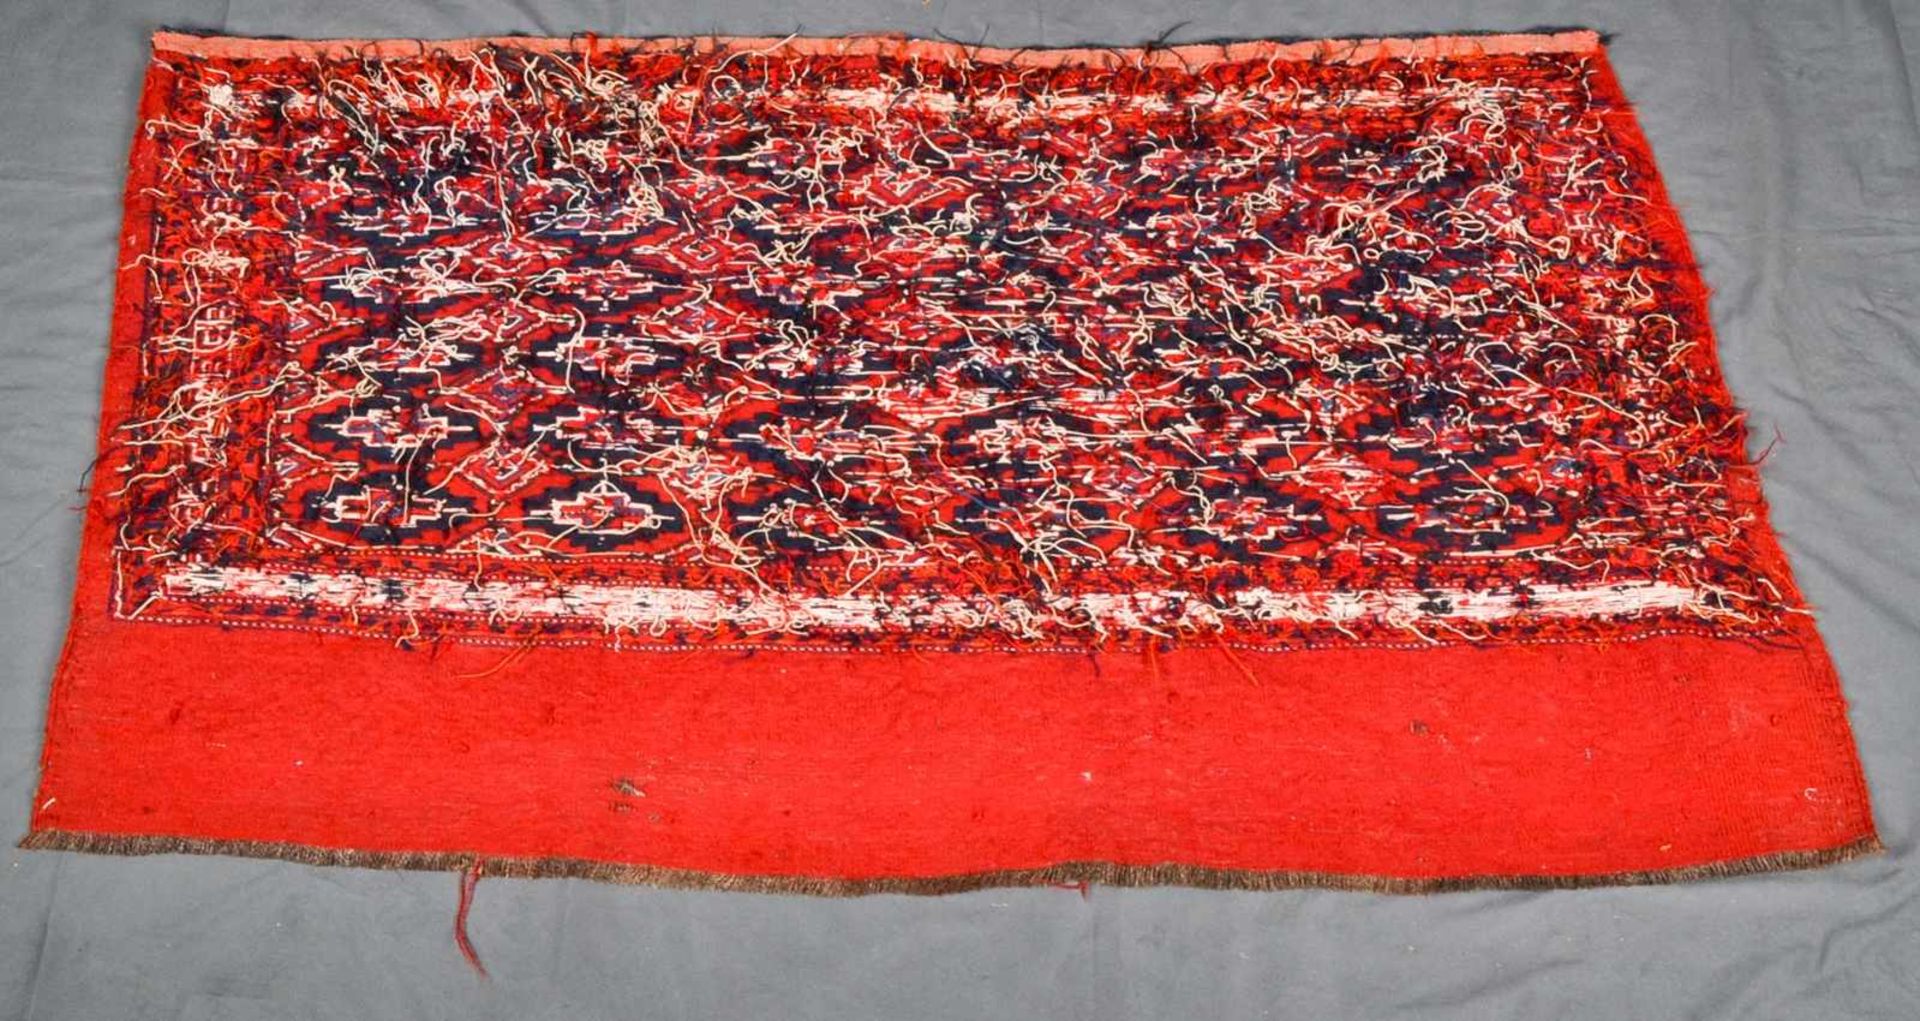 3teiliges Konvolut "alte und antike" Teppiche, bestehend aus drei versch. Kelim bzw. Flachgewebe- - Image 7 of 14